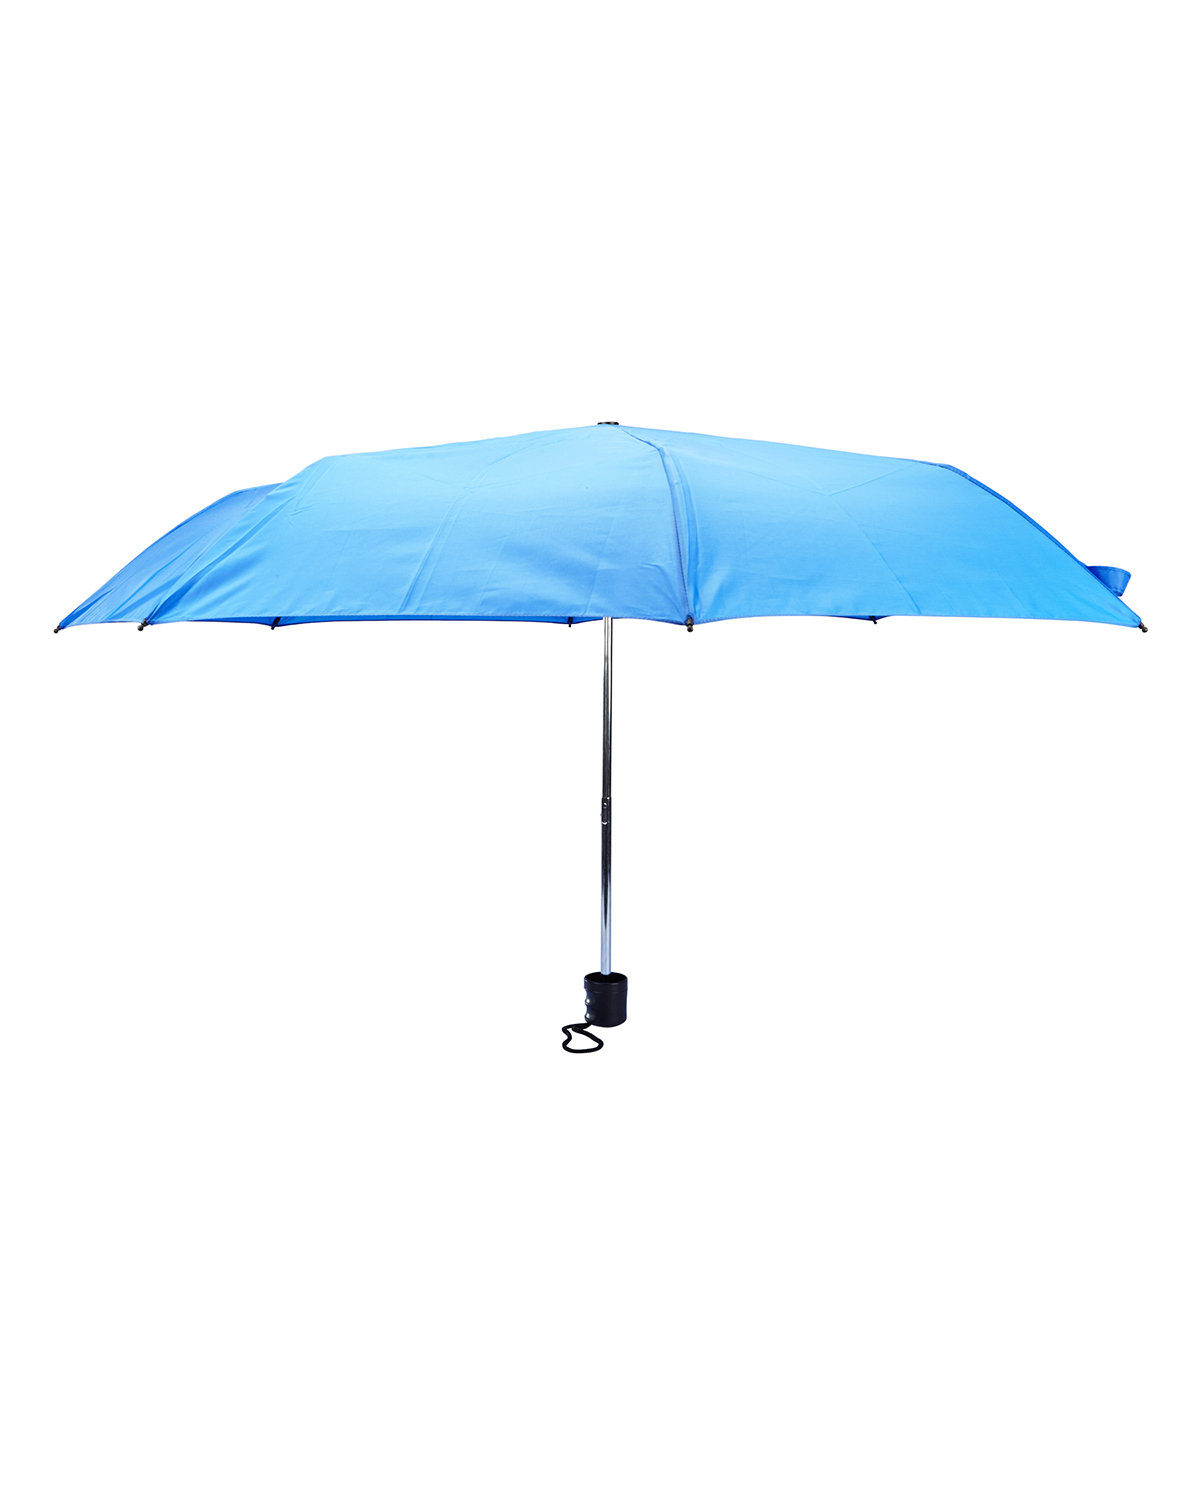 Prime Line Budget Folding Umbrella reflex blue 